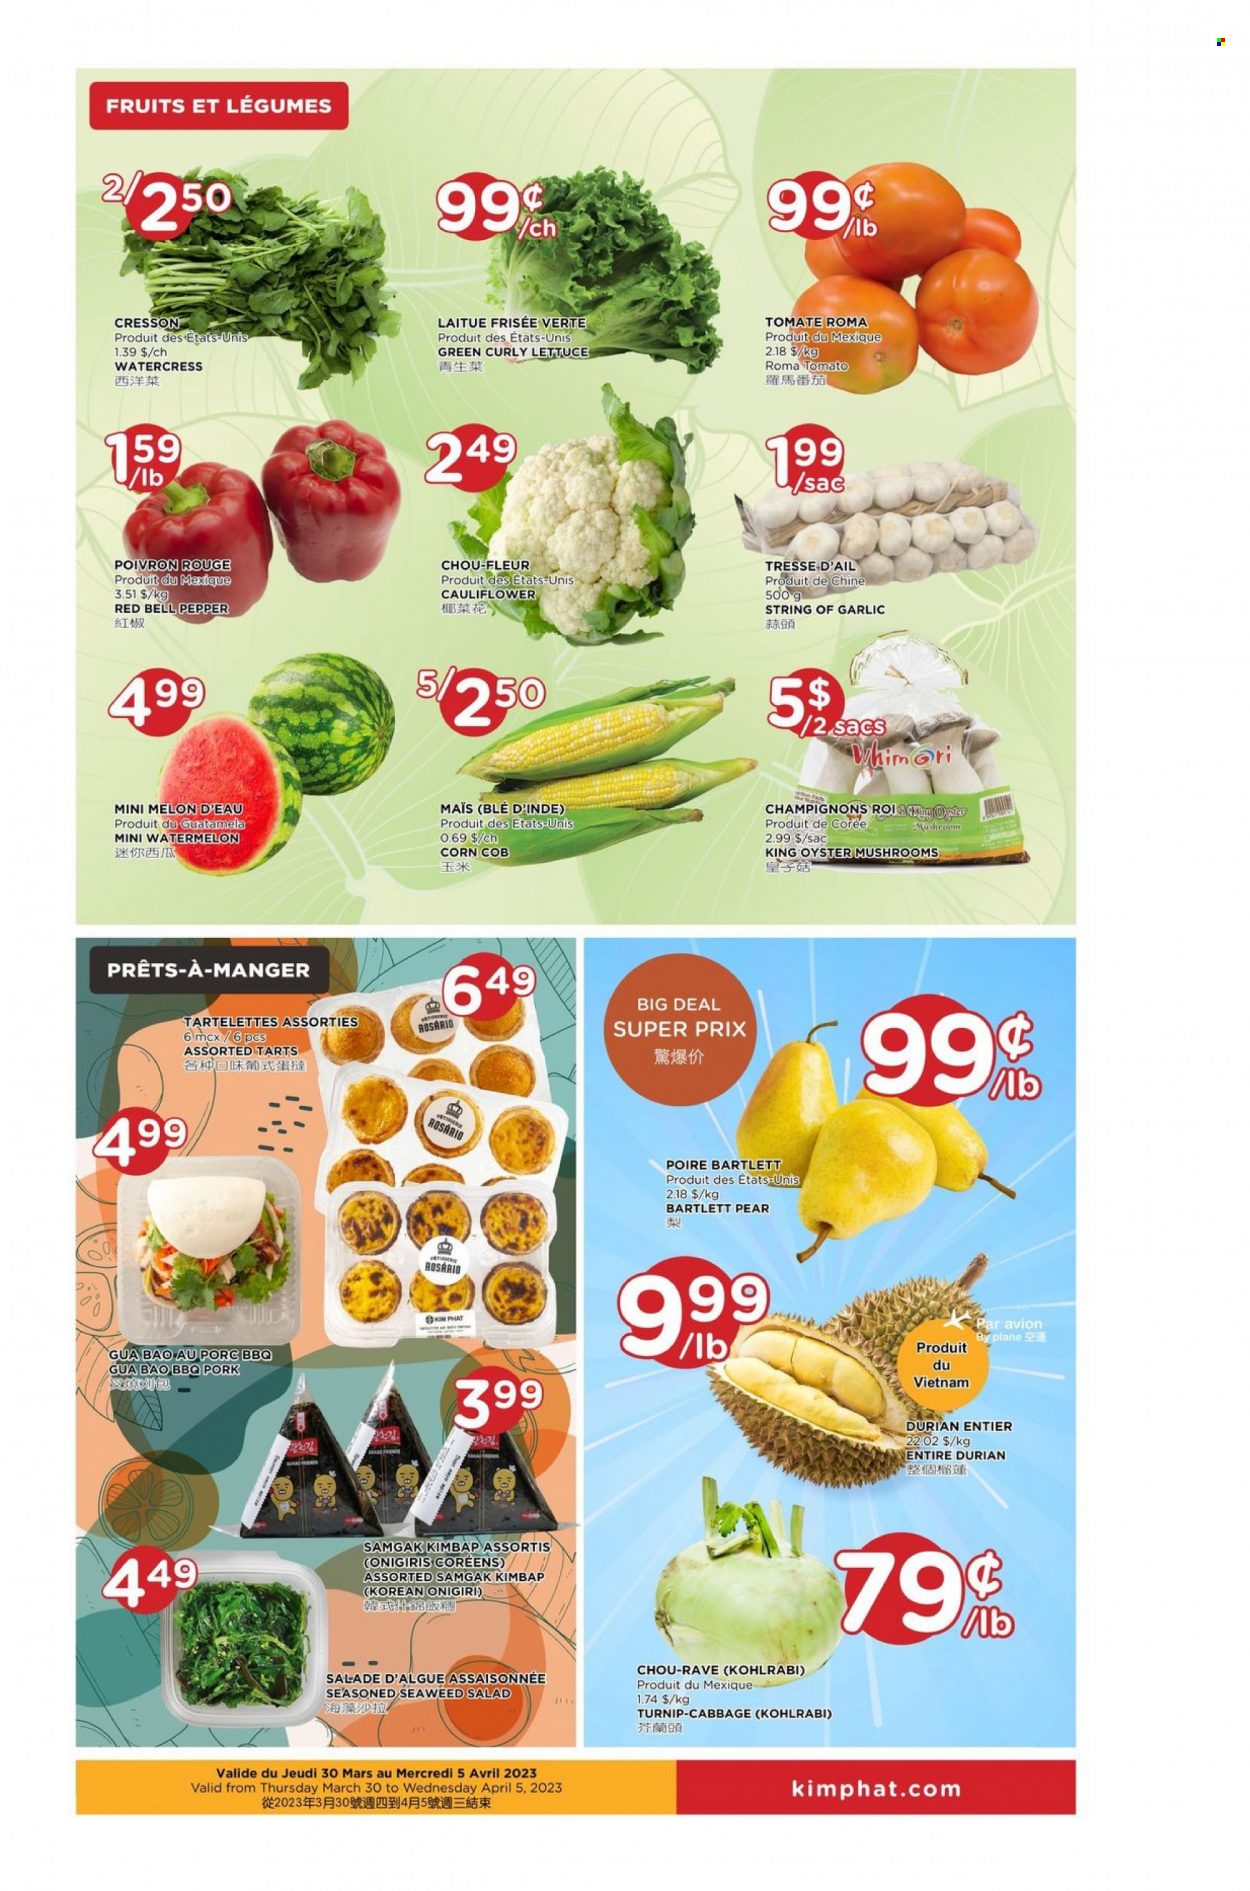 thumbnail - Circulaire Kim Phat - 30 Mars 2023 - 05 Avril 2023 - Produits soldés - tartelettes, salade, chou-fleur, poivrons, frisée, maïs, melon, champignon. Page 3.